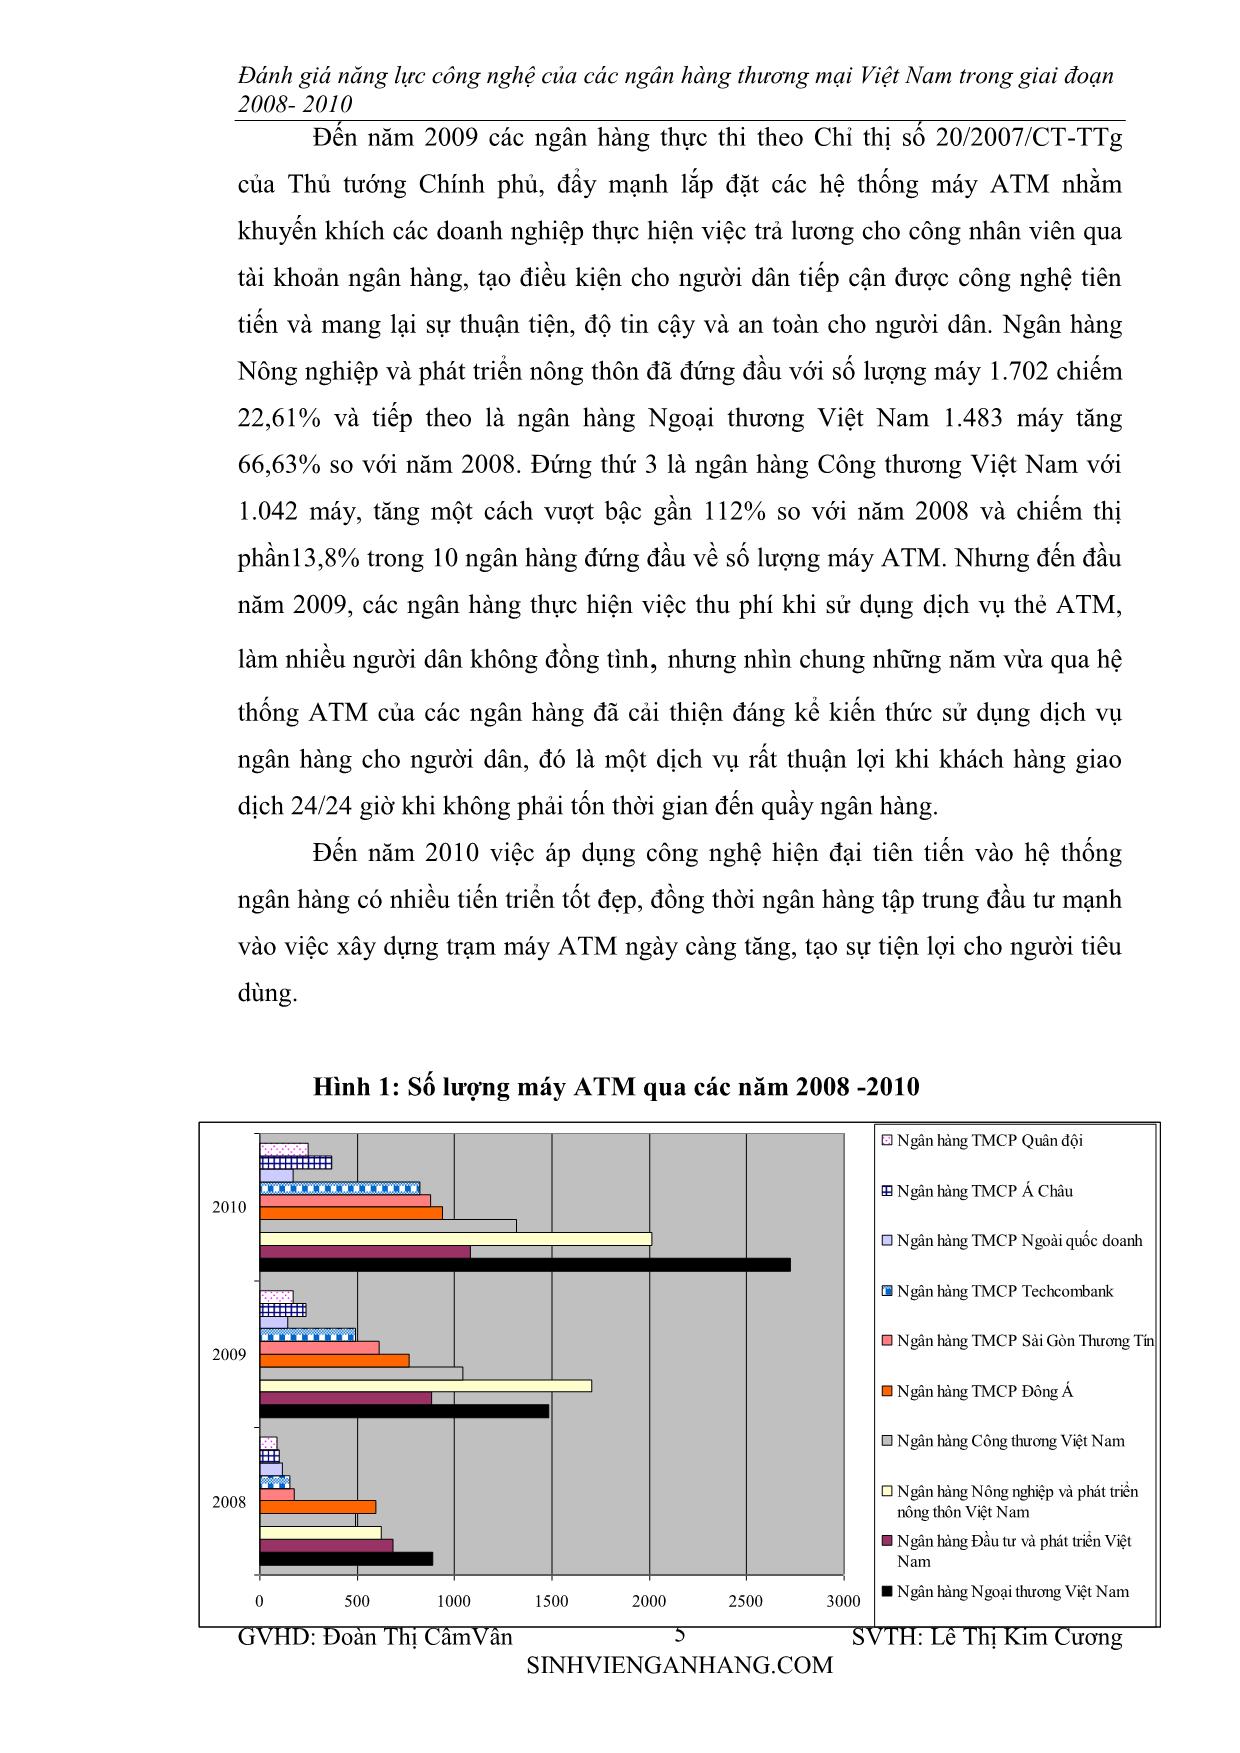 Chuyên đề Đánh giá năng lực cạnh tranh về công nghệ của các ngân hàng thương mại Việt Nam trong giai đoạn 2008-2010 trang 5